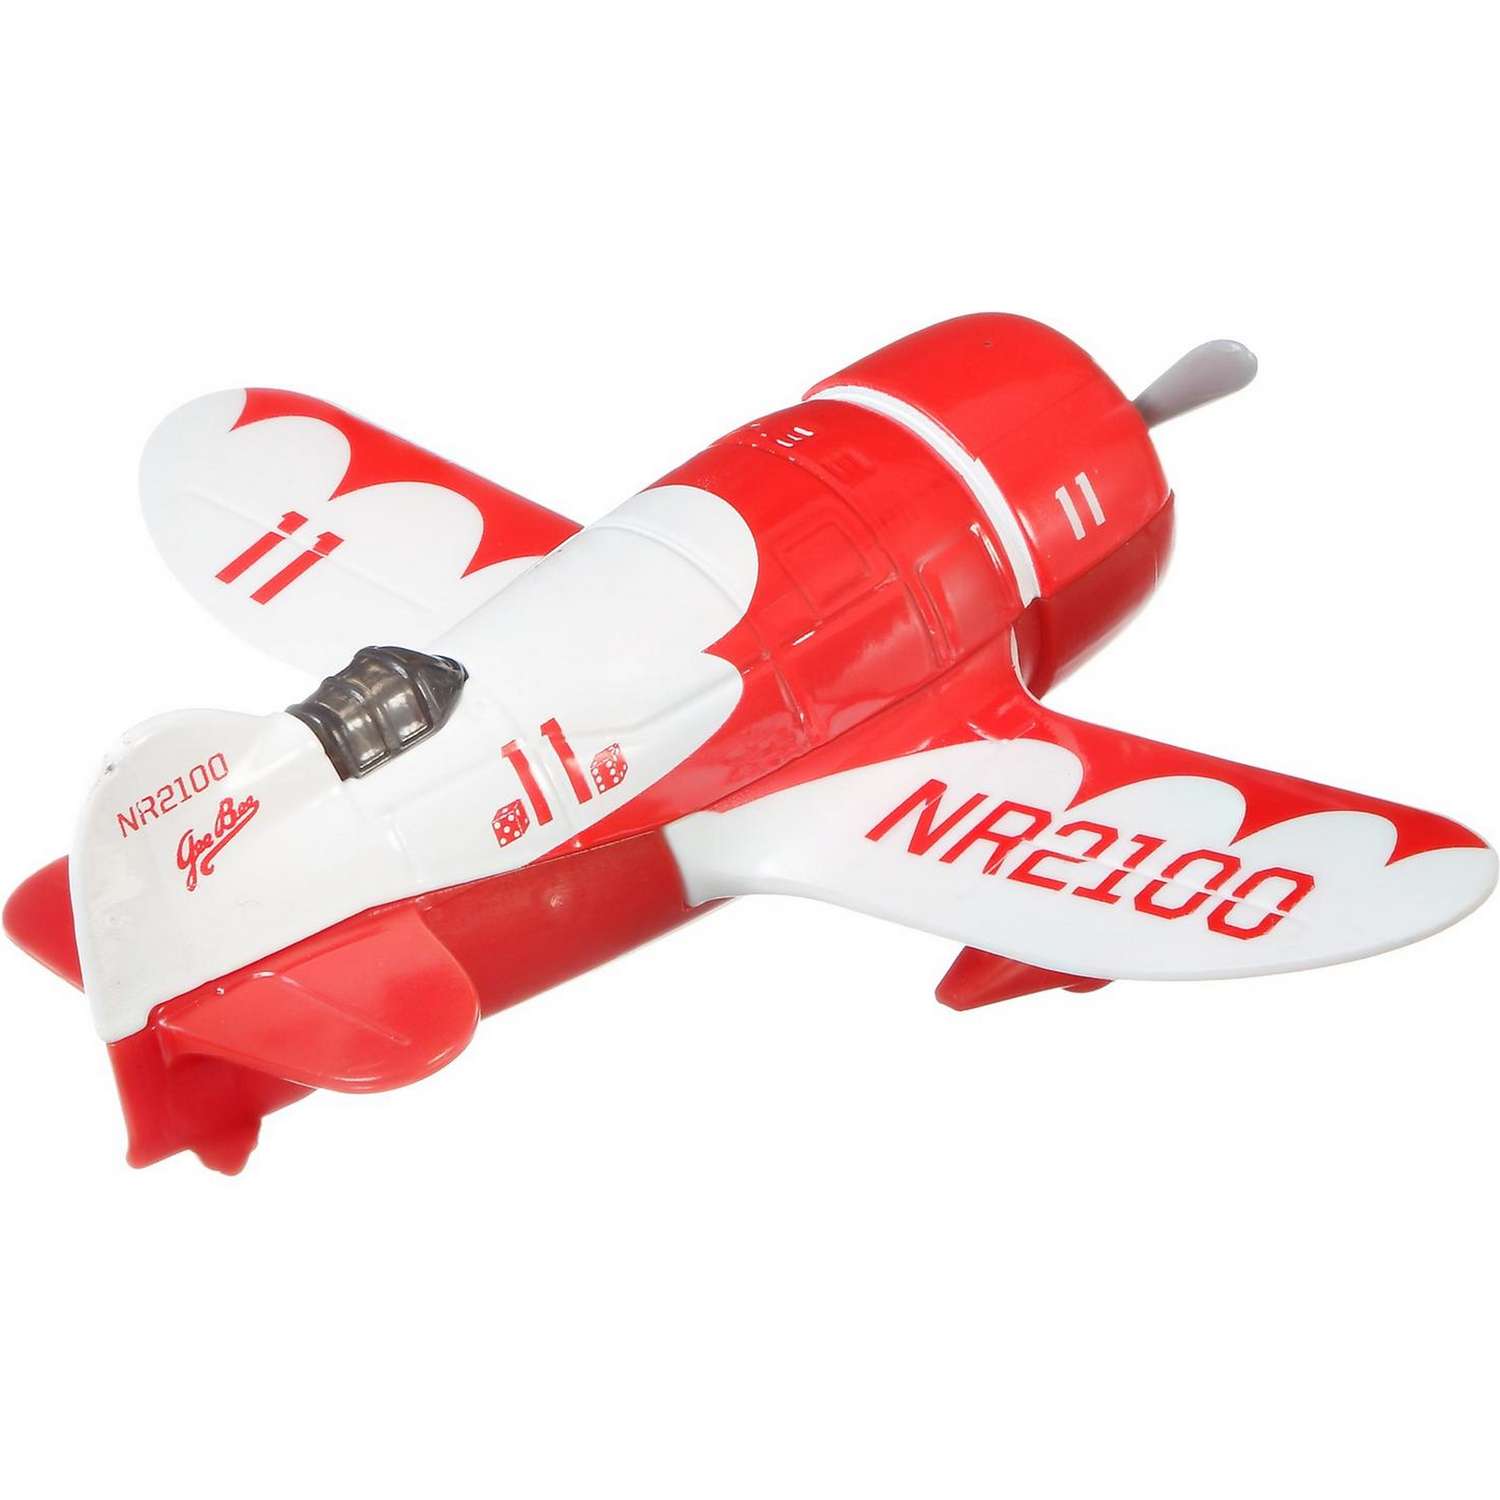 Игрушка Matchbox Транспорт воздушный Самолет Джи Би GBL58 68982 - фото 3